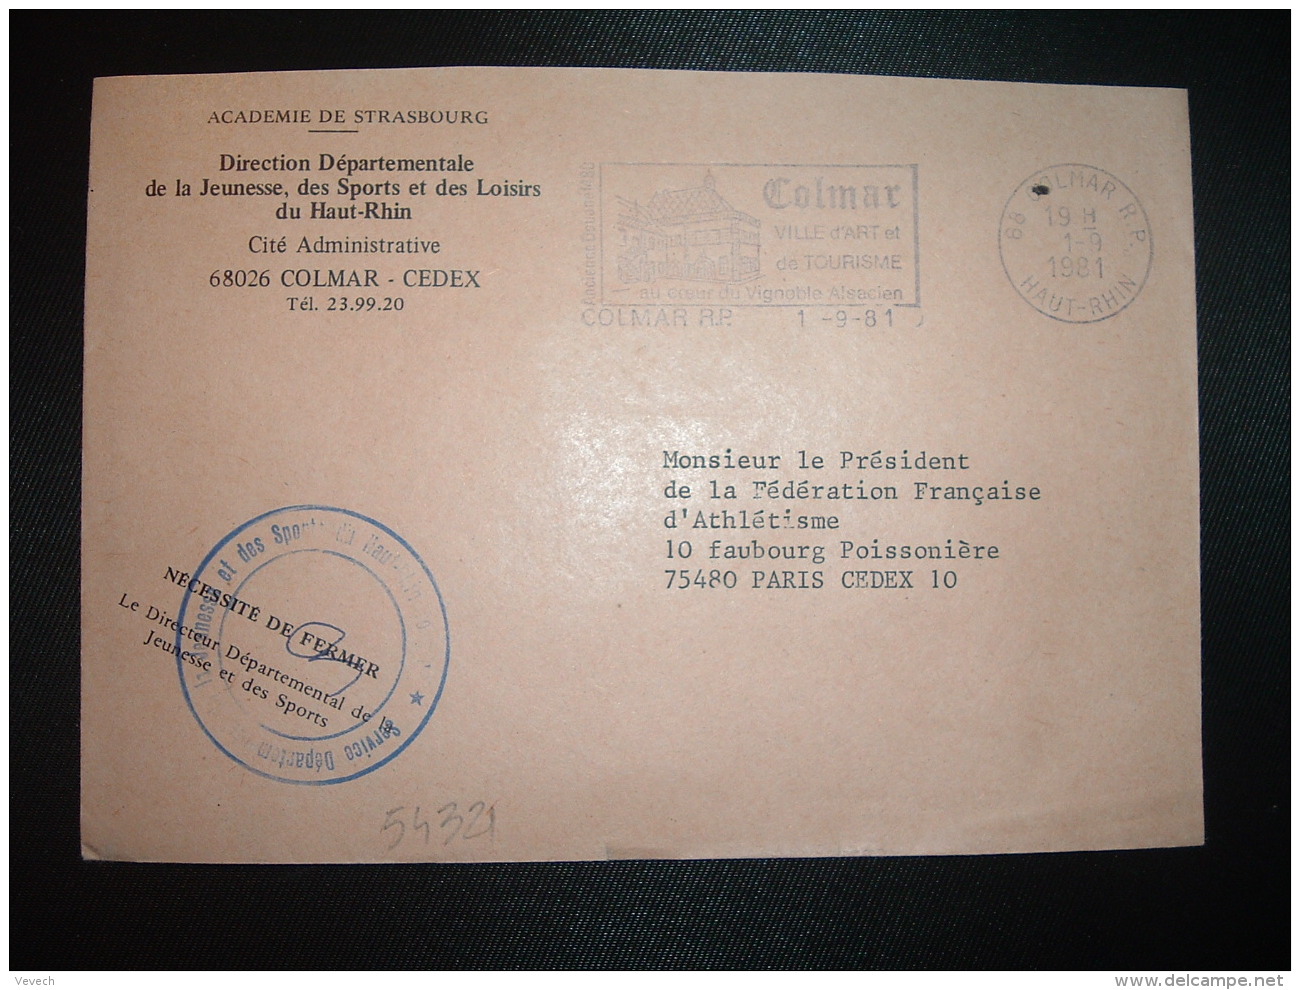 LETTRE OBL.MEC.1-9-1981 COLMAR RP (68) DIRECTION DEPARTEMENTALE DE LA JEUNESSE, DES SPORTS ET DES LOISIRS DU HAUT-RHIN - Civil Frank Covers